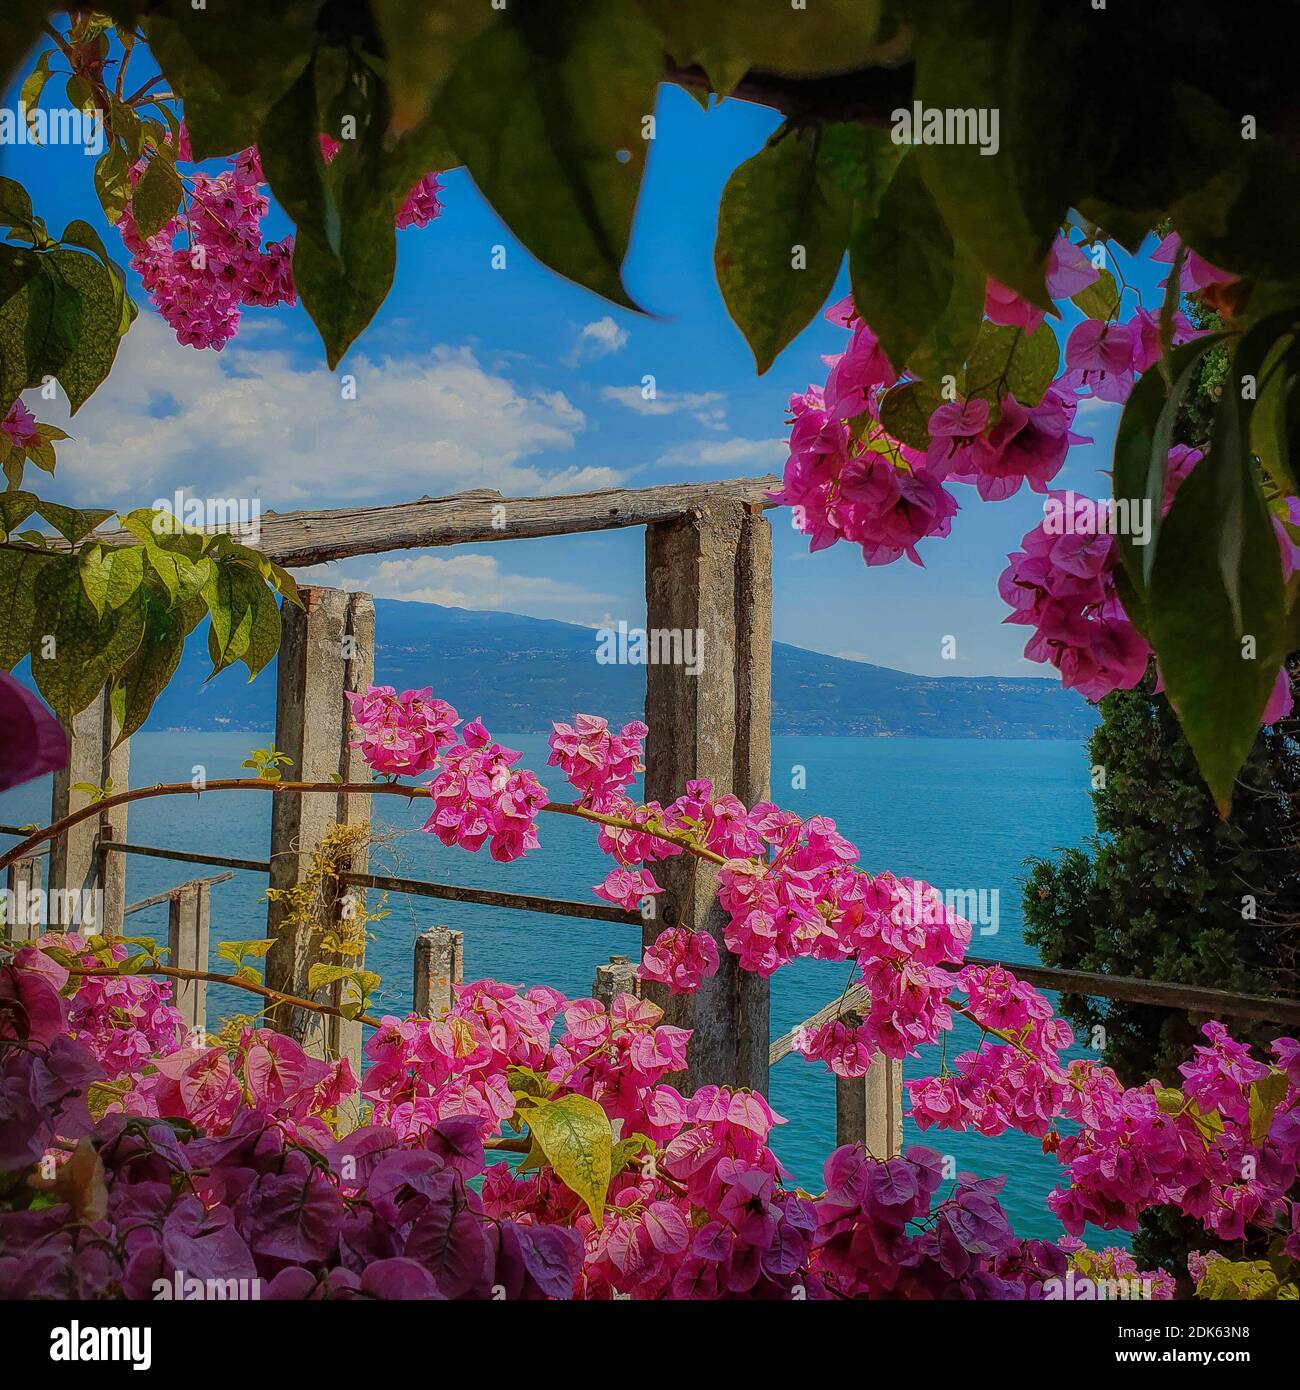 Flowers on Limonaia over Lake Garda - Italy Stock Photo